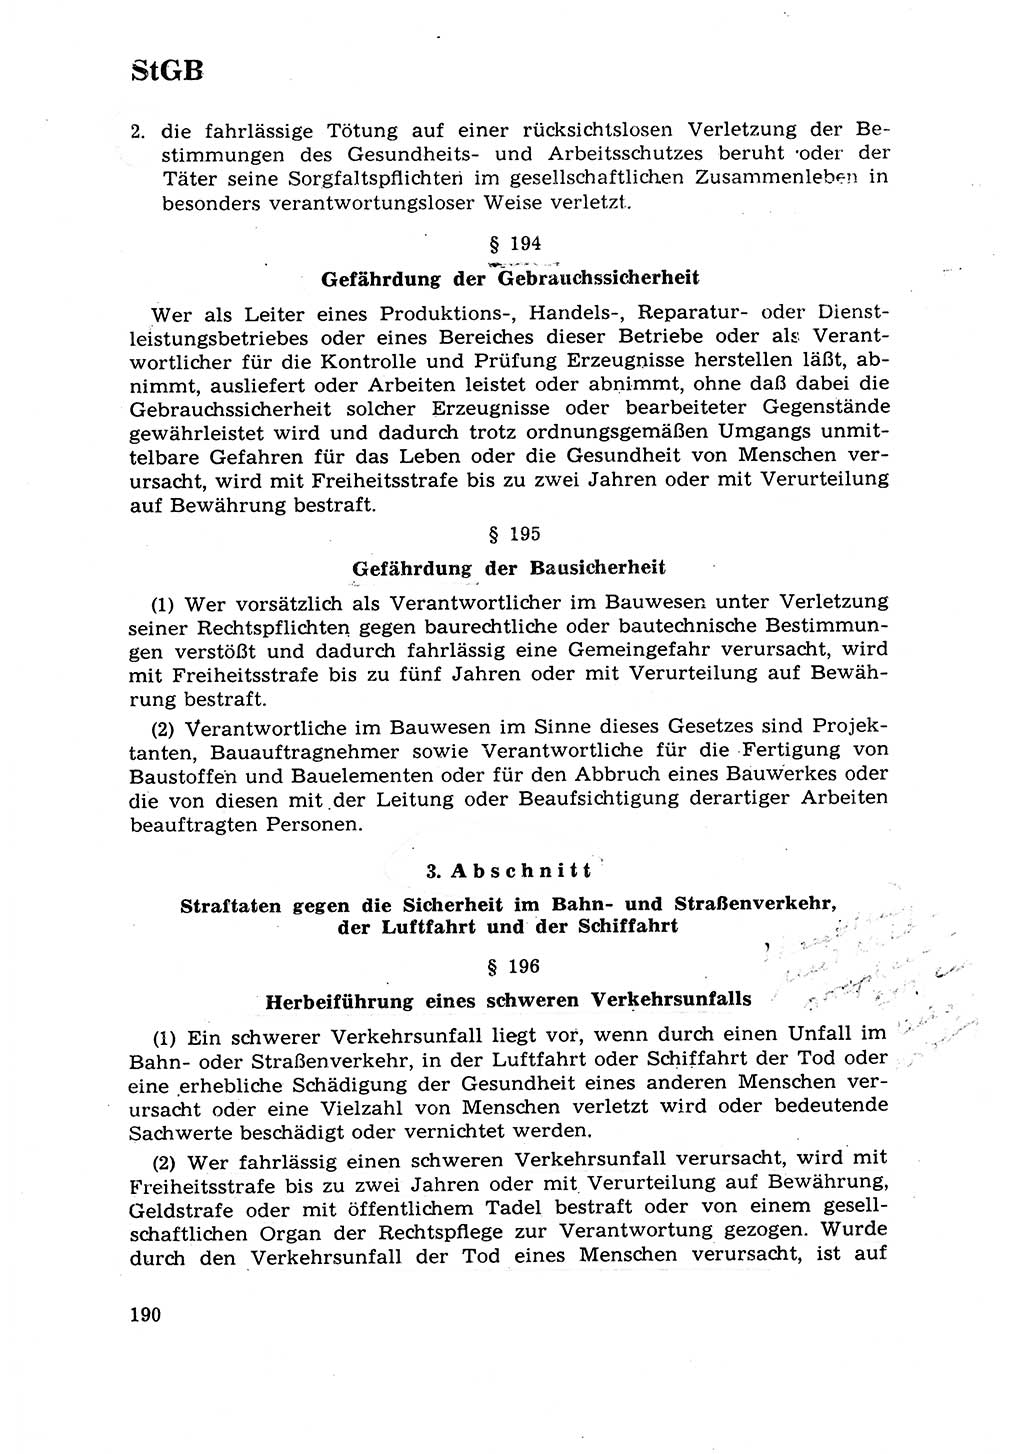 Strafrecht [Deutsche Demokratische Republik (DDR)] 1968, Seite 190 (Strafr. DDR 1968, S. 190)